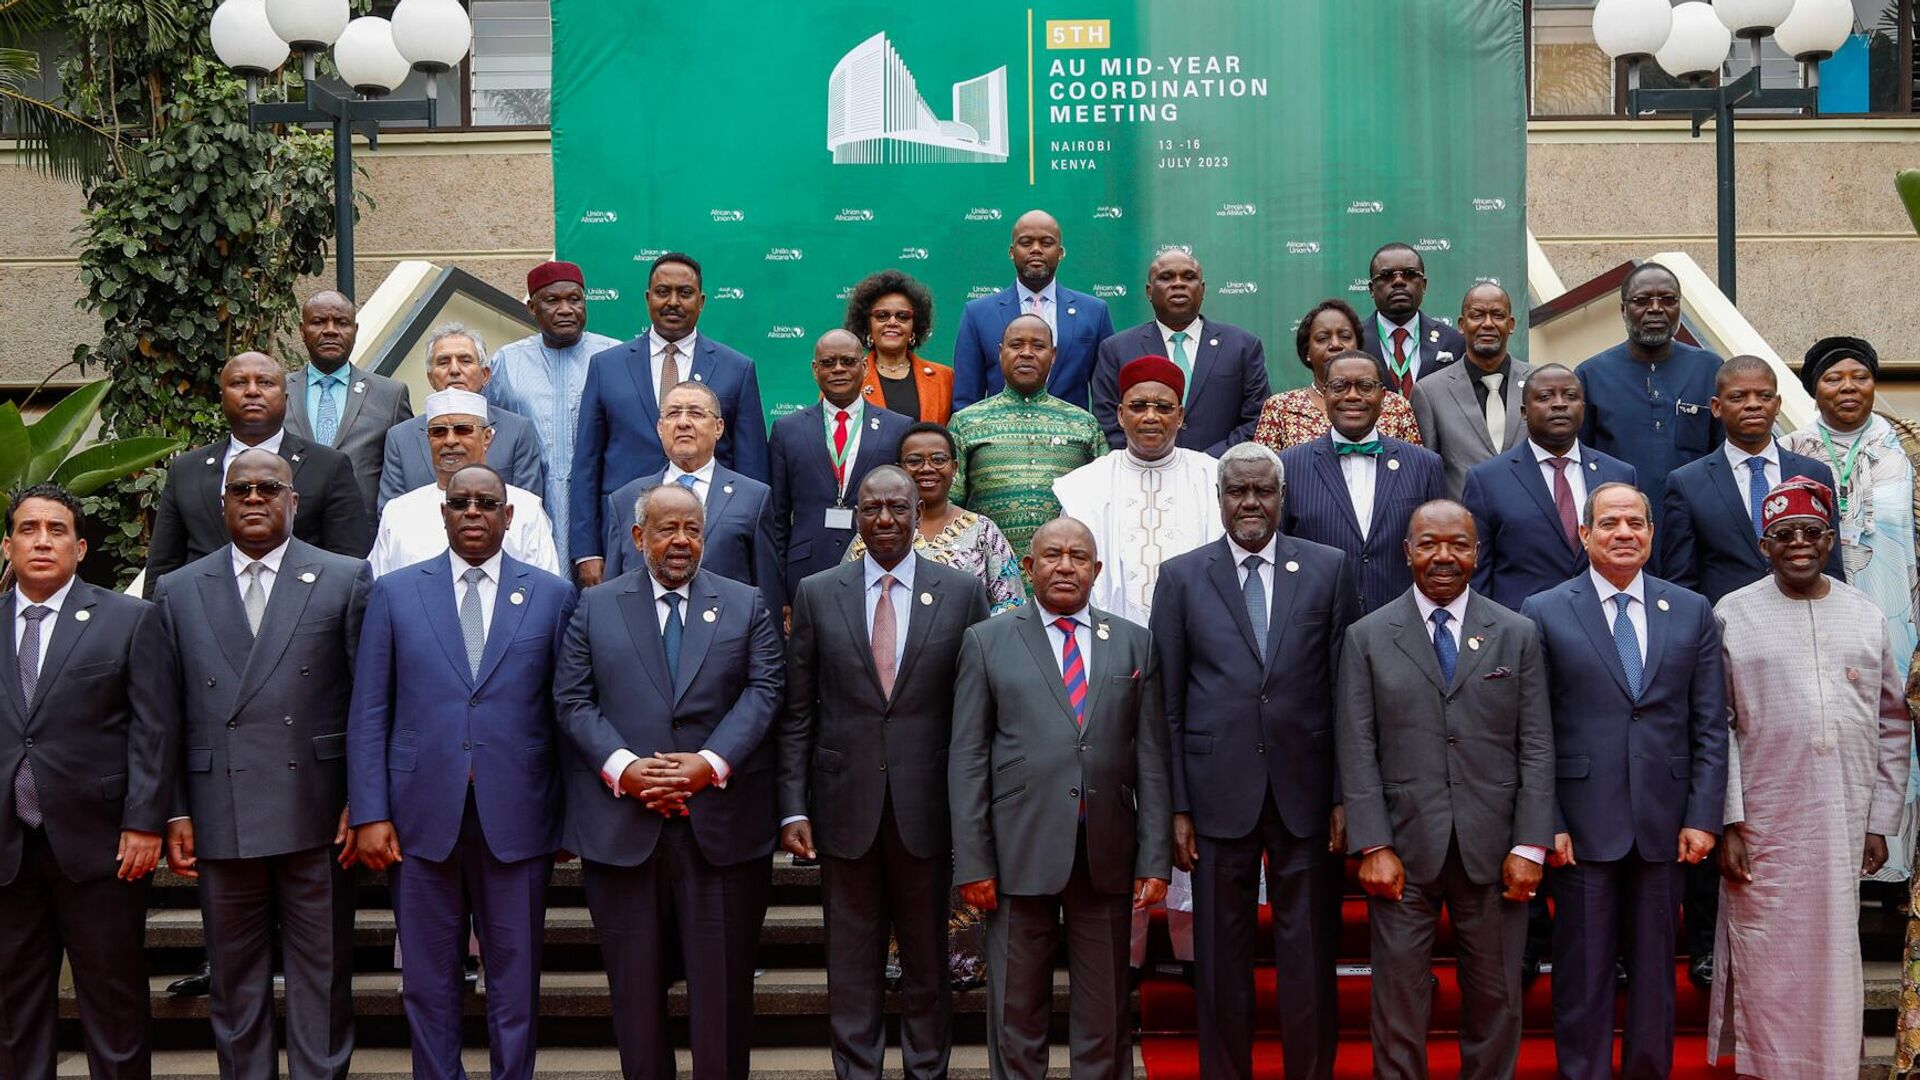 Liderii africani  în capitala Kenyei, Nairobi, participă la cel de-al 5-lea summit de coordonare al Uniunii Africane (AU) - Sputnik Moldova, 1920, 19.07.2023